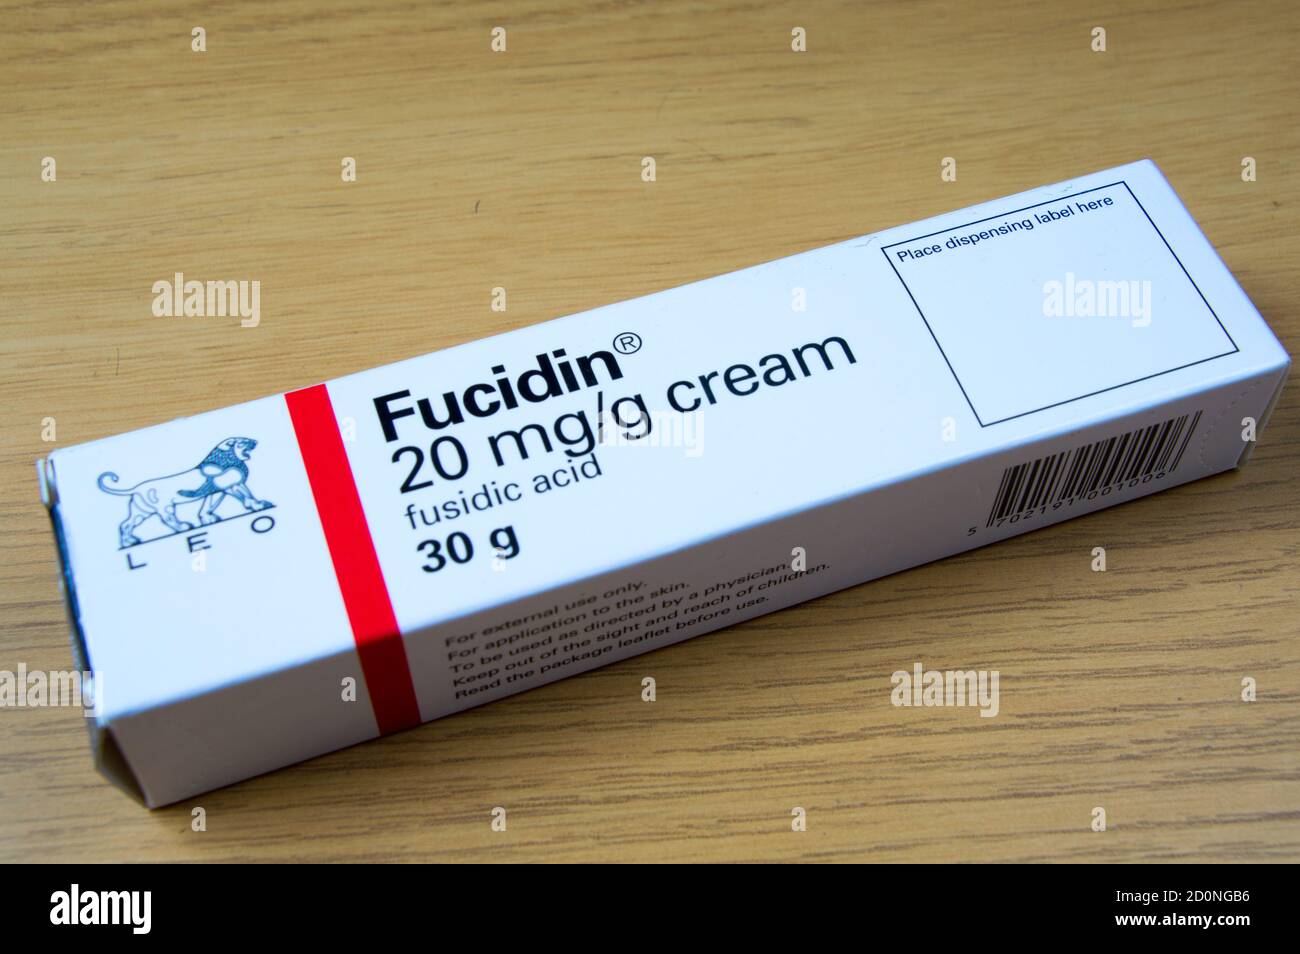 Fucidin 20 mg/g cream carton on a table Stock Photo